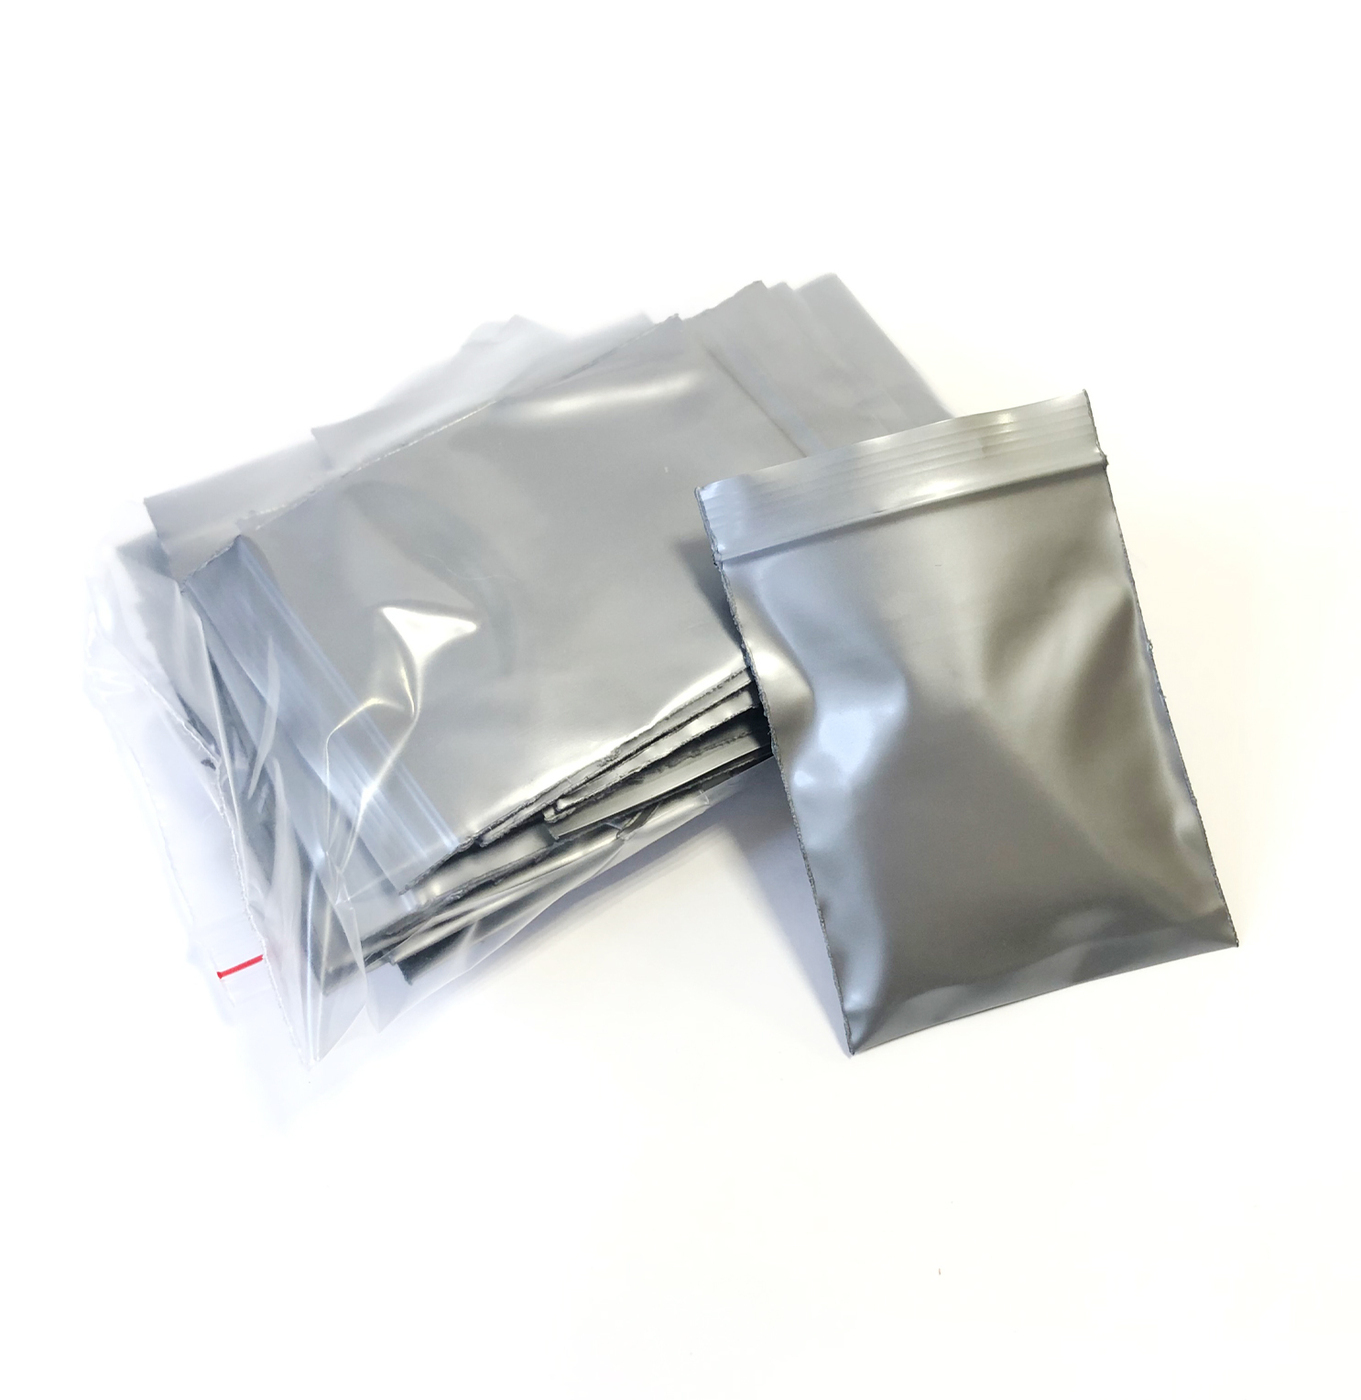 Зип Пакет (Zip Lock), 6*7 см (100мкм), упаковка 50 штук, цвет серебристый